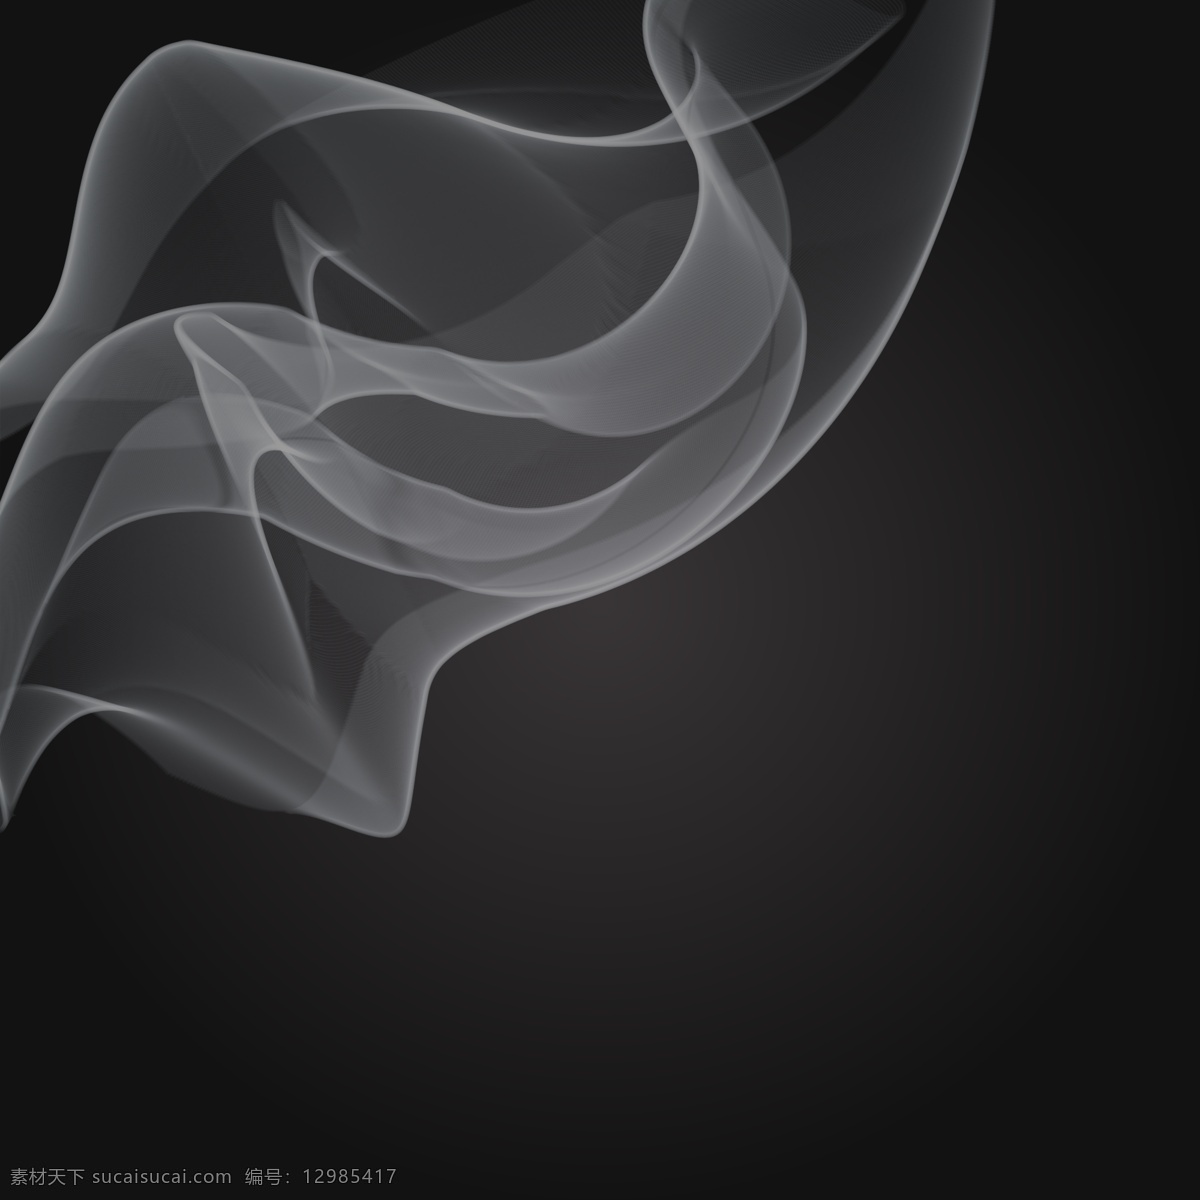 烟矢量背景 烟 矢量 模板 背景 图形 黑色 魔术 化学 环境 香烟 效果 吸烟 蒸汽 图像 最新矢量素材